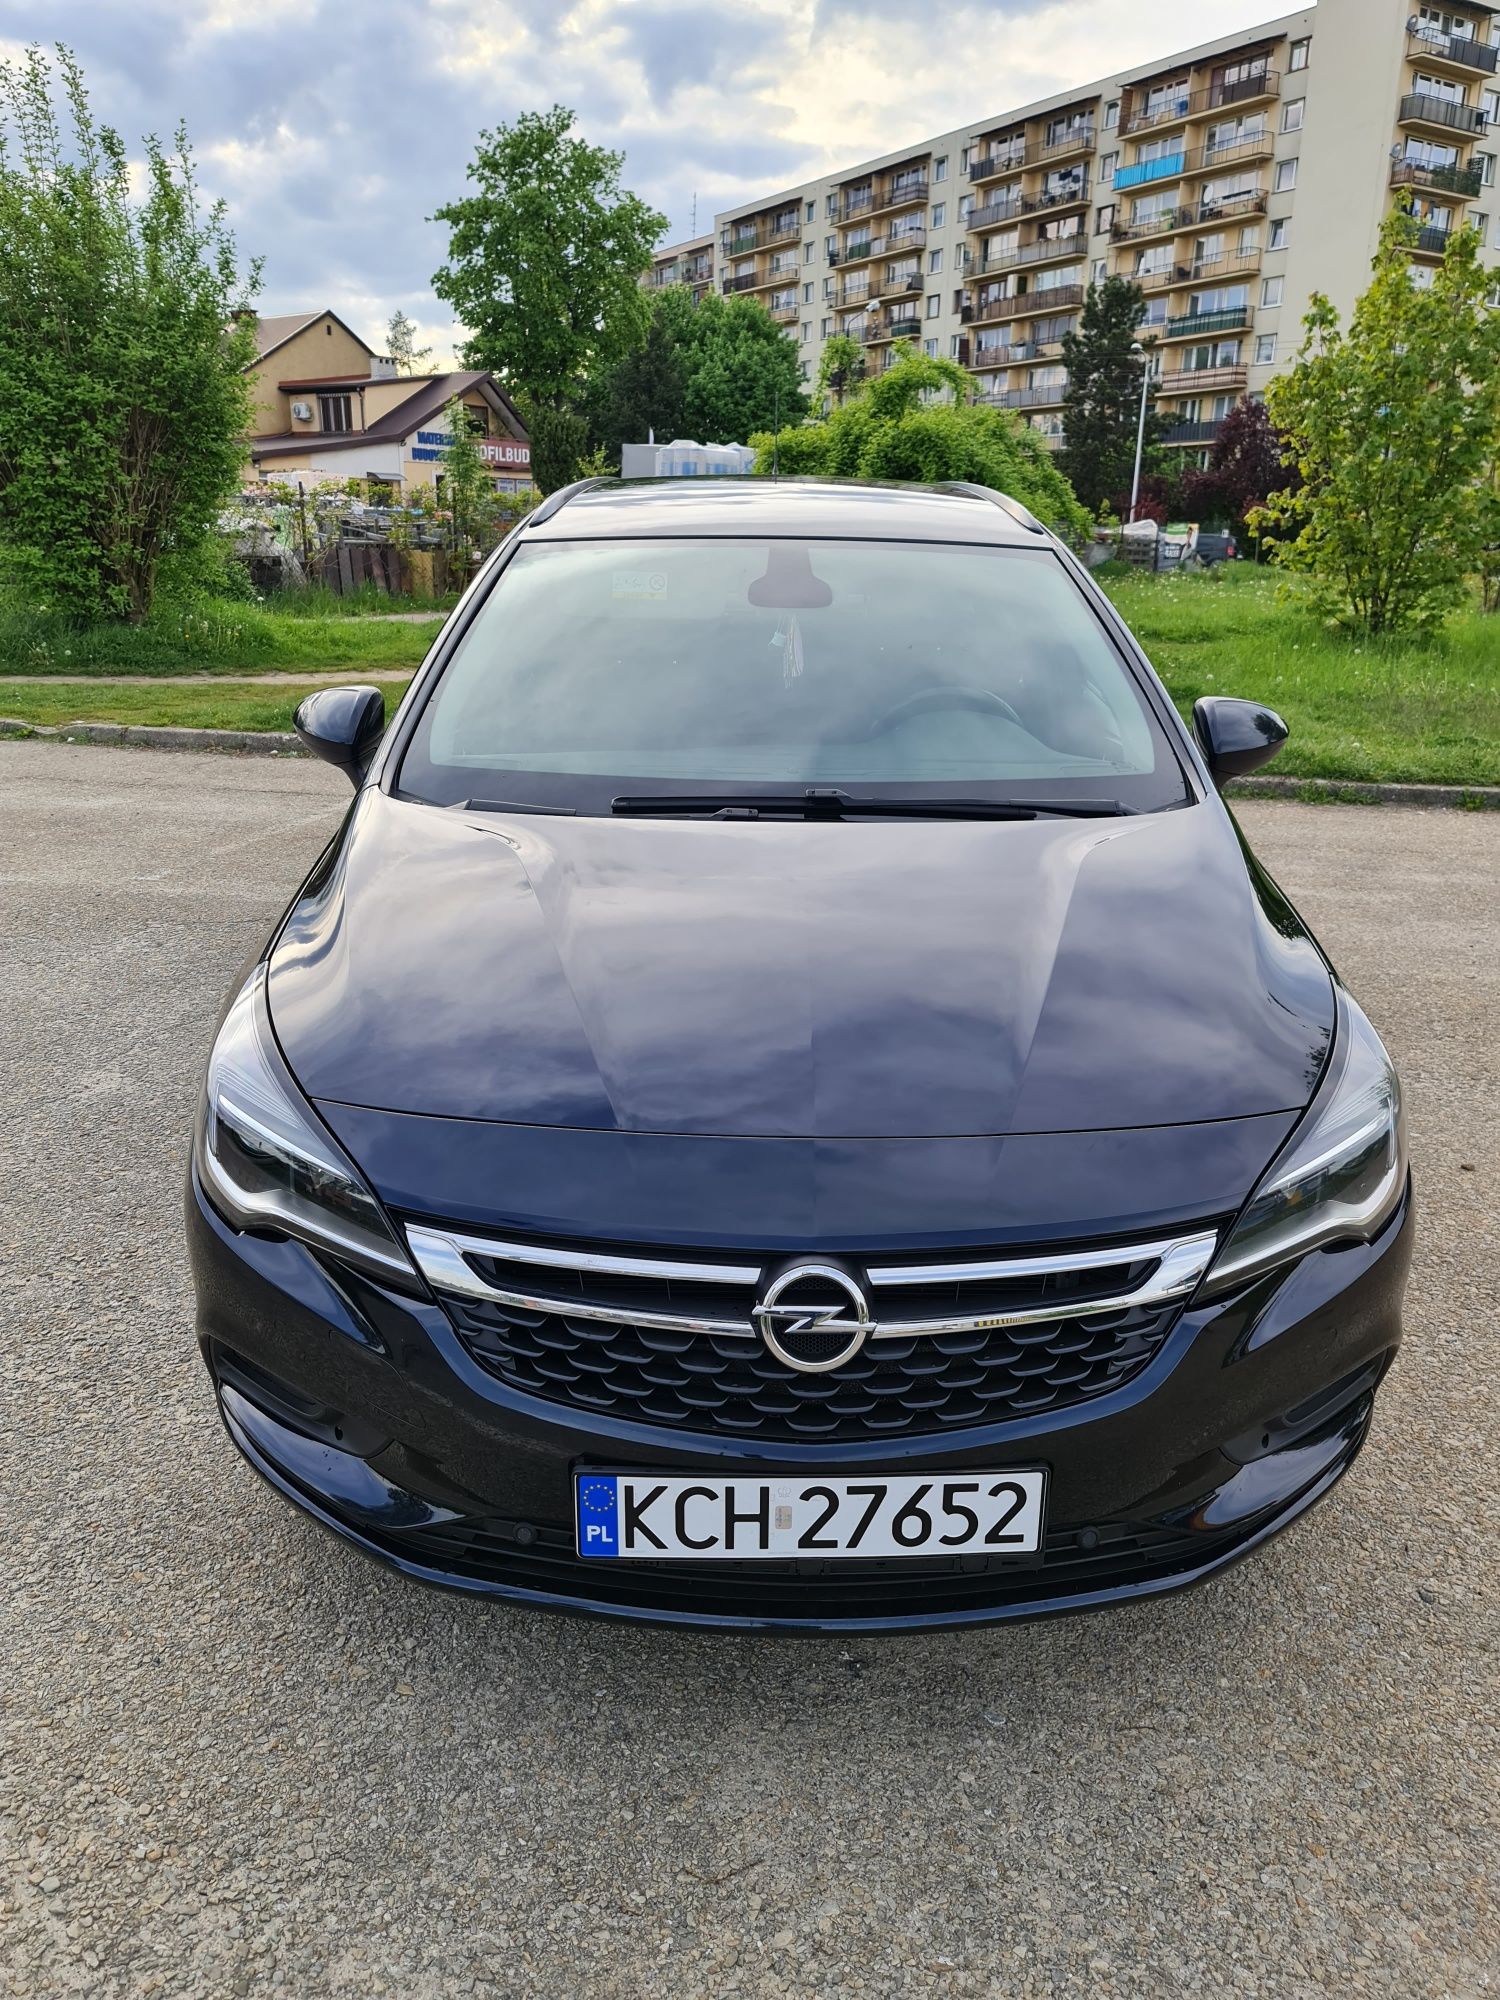 Opel Astra 2018 Sport tourner możliwa zamiana